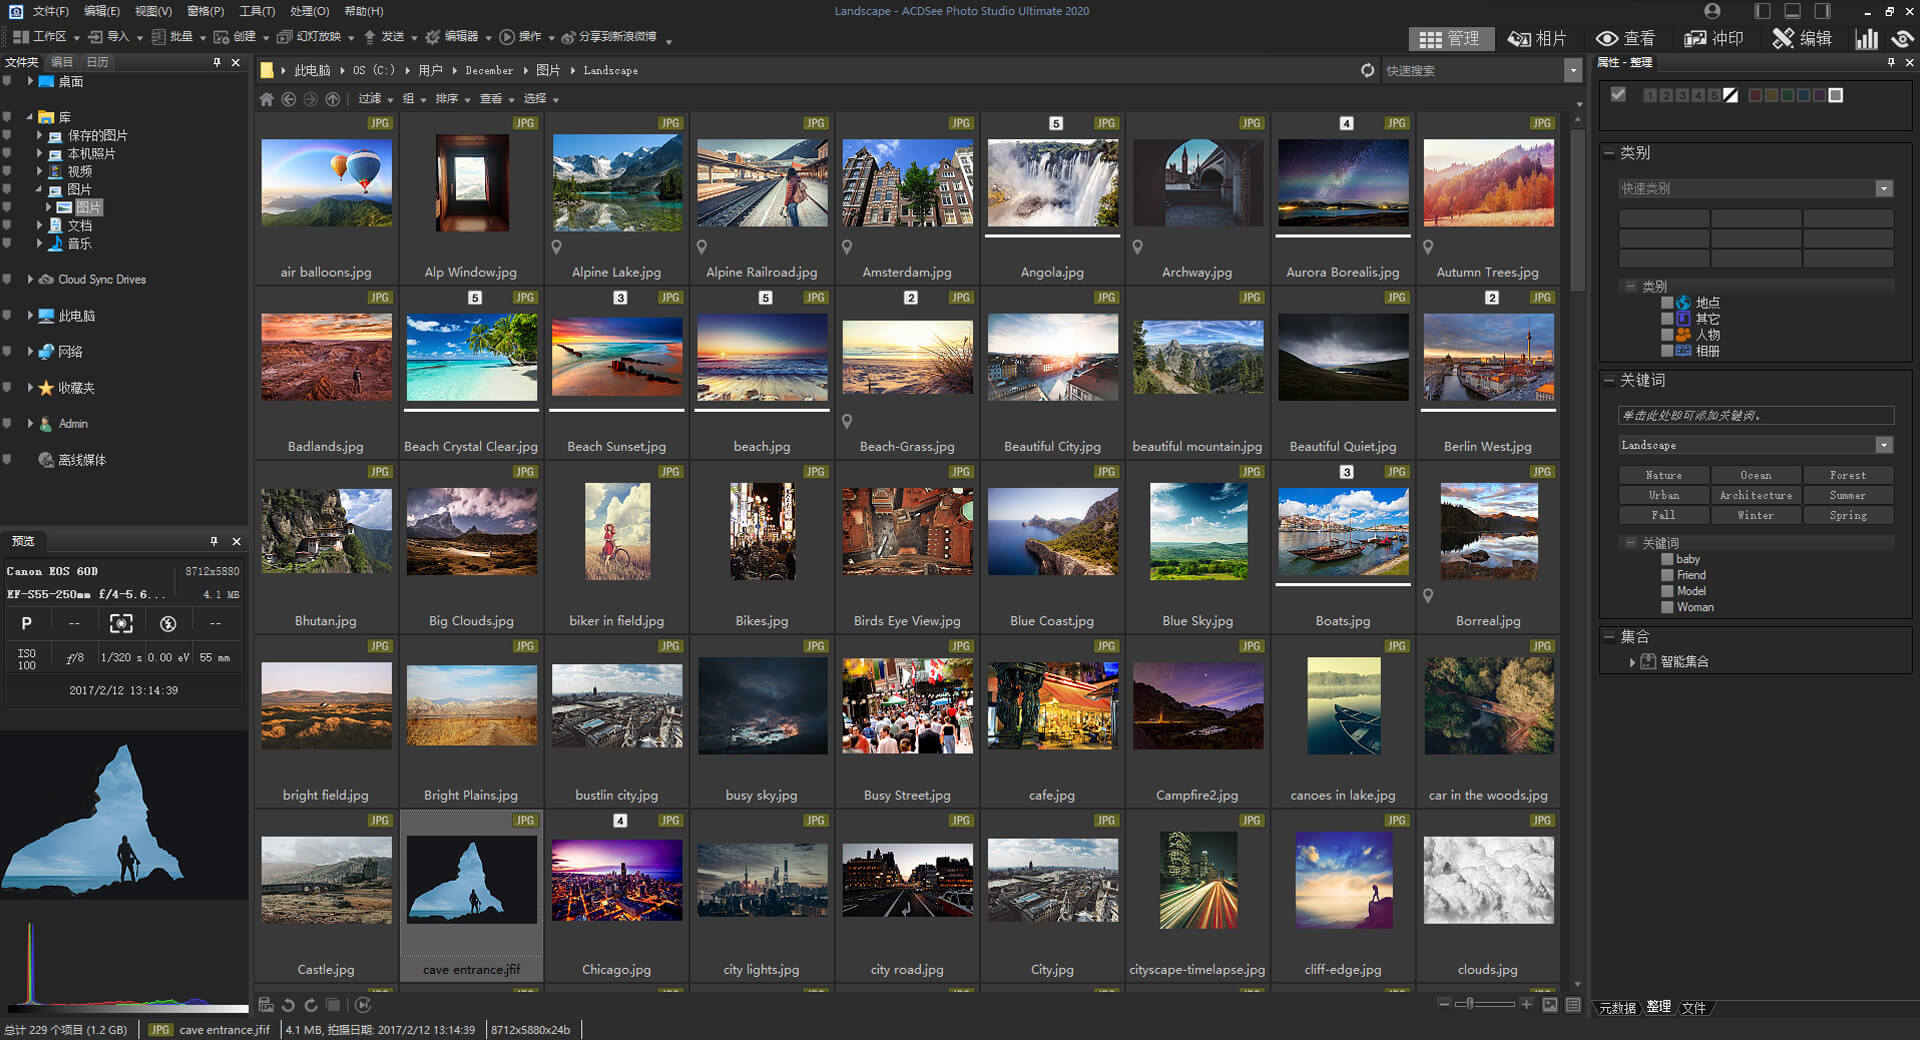 [图像软件]ACDSee图像管理软件下载,ACDSee Photo Studio Ultimate 2020 简体中文旗舰版